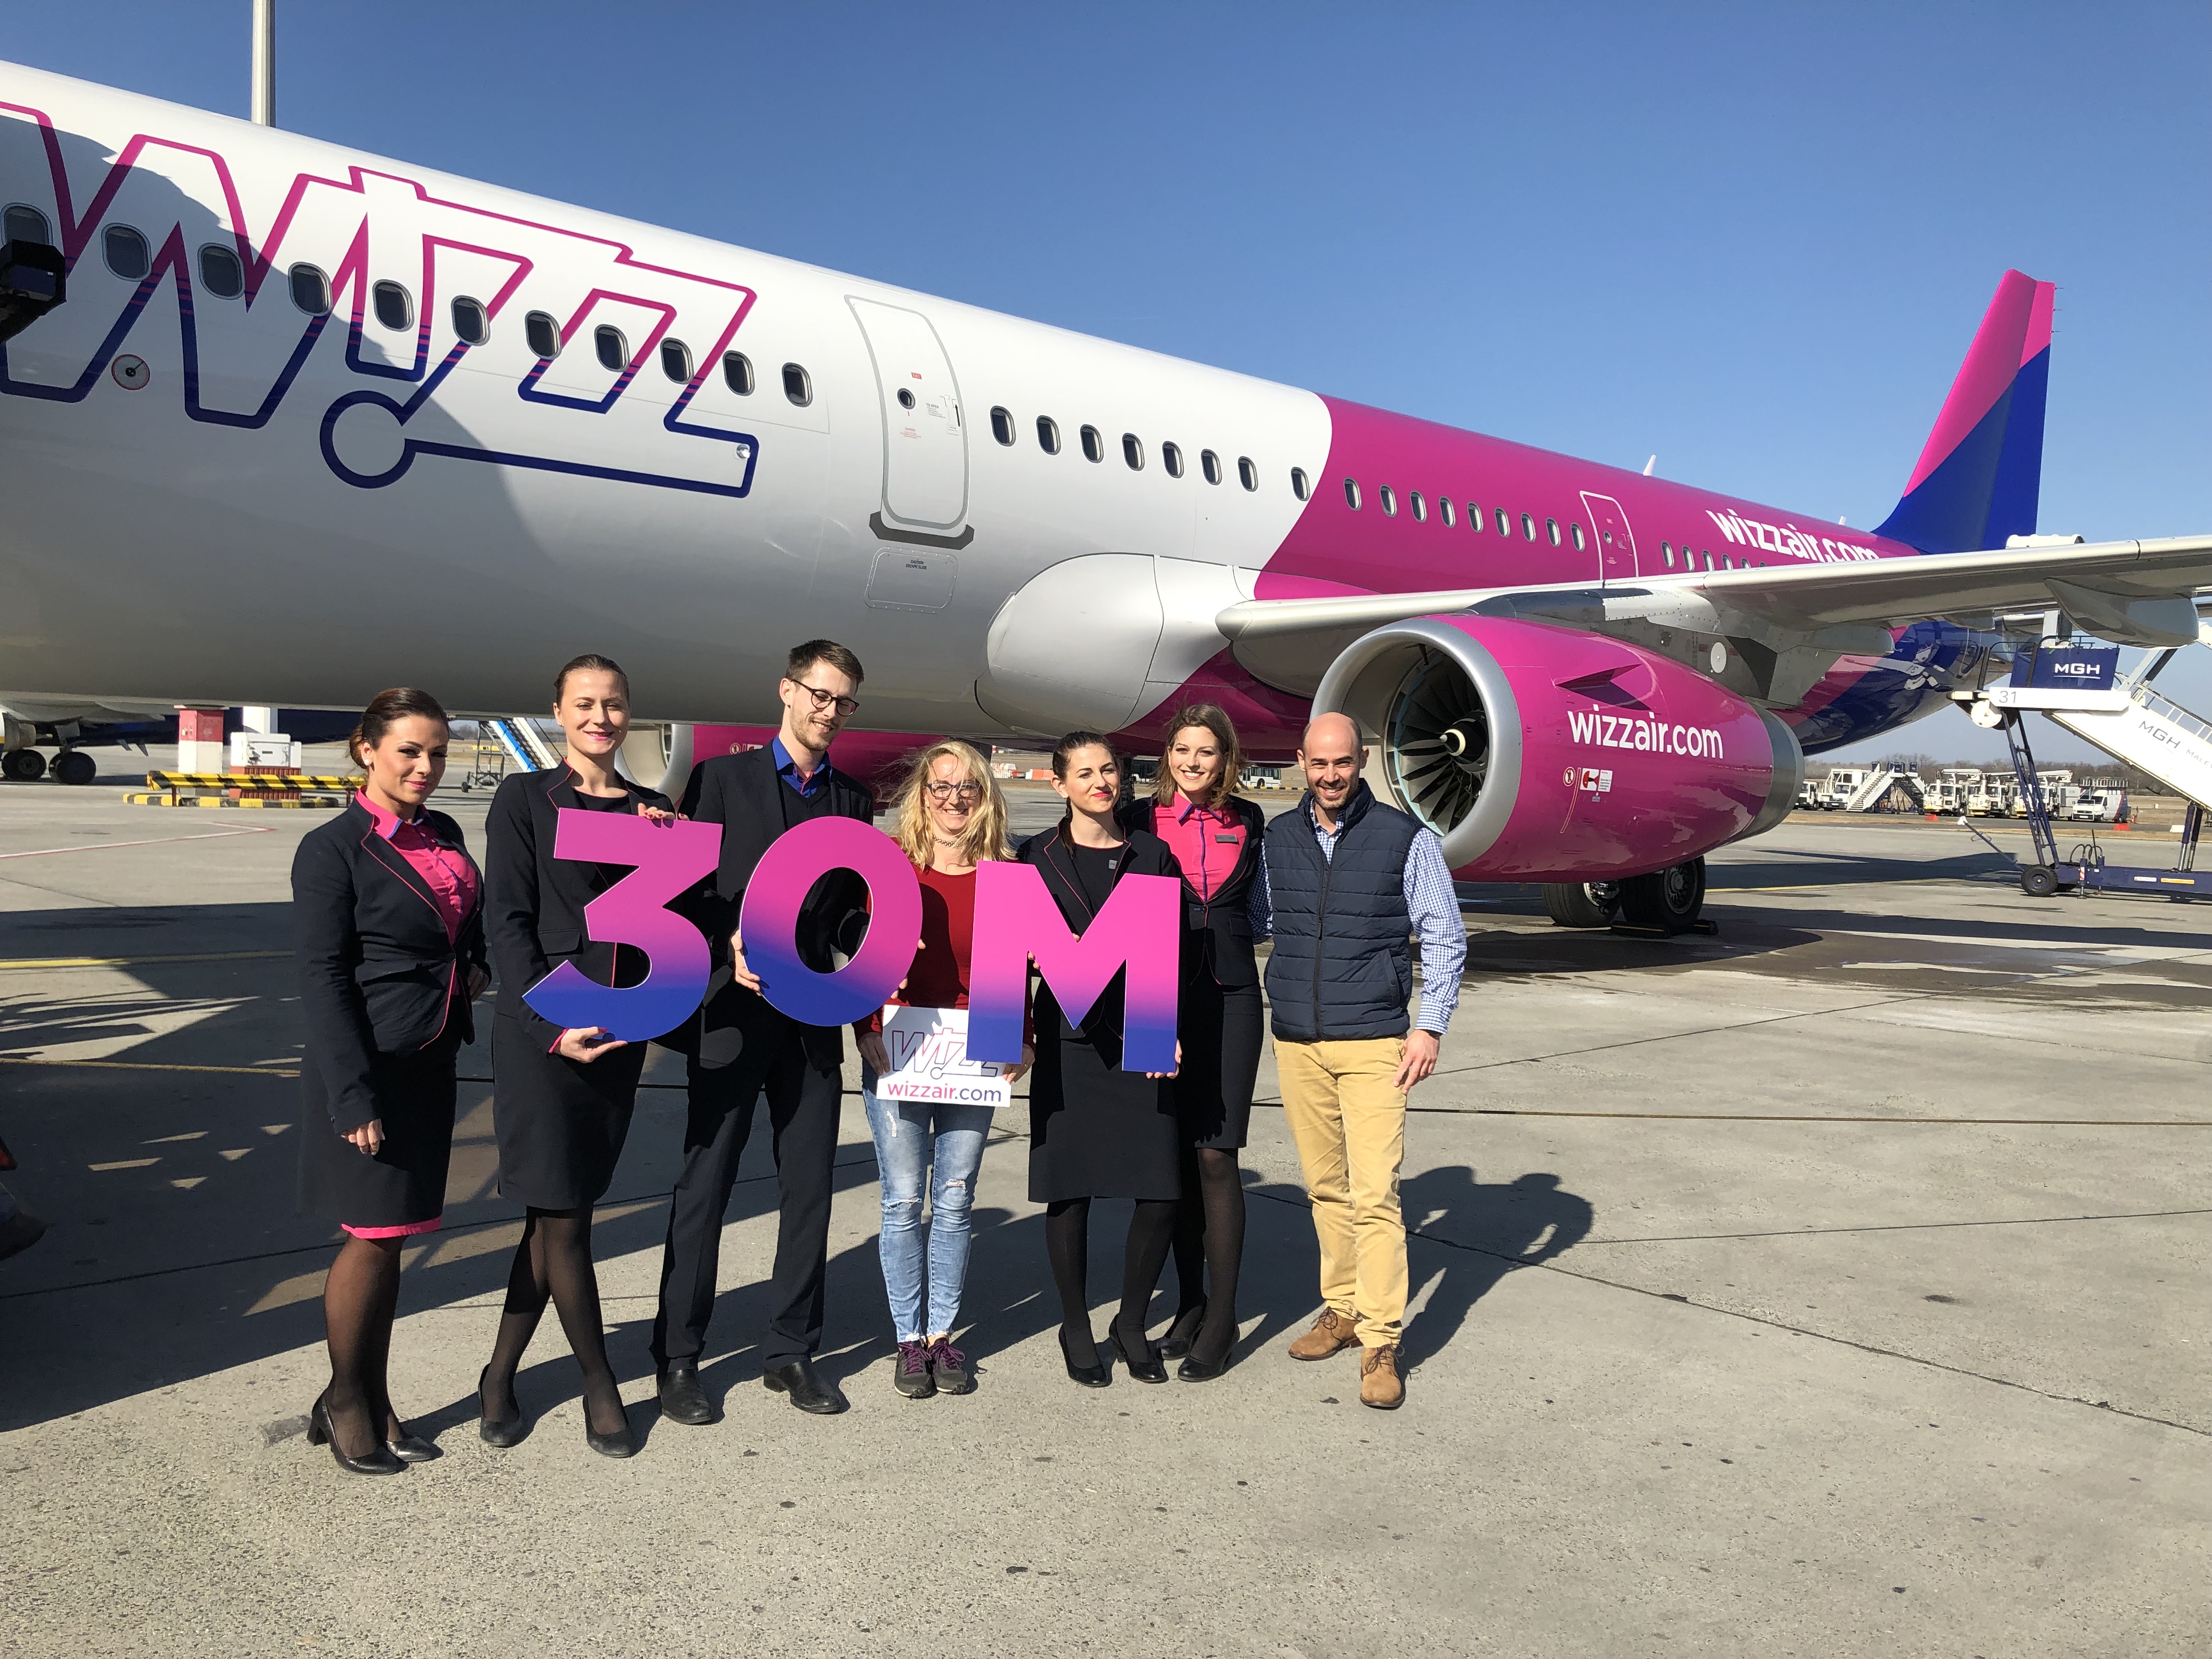 Újabb Wizz Air-mérföldkő: 30 millió utas a magyarországi járatokon